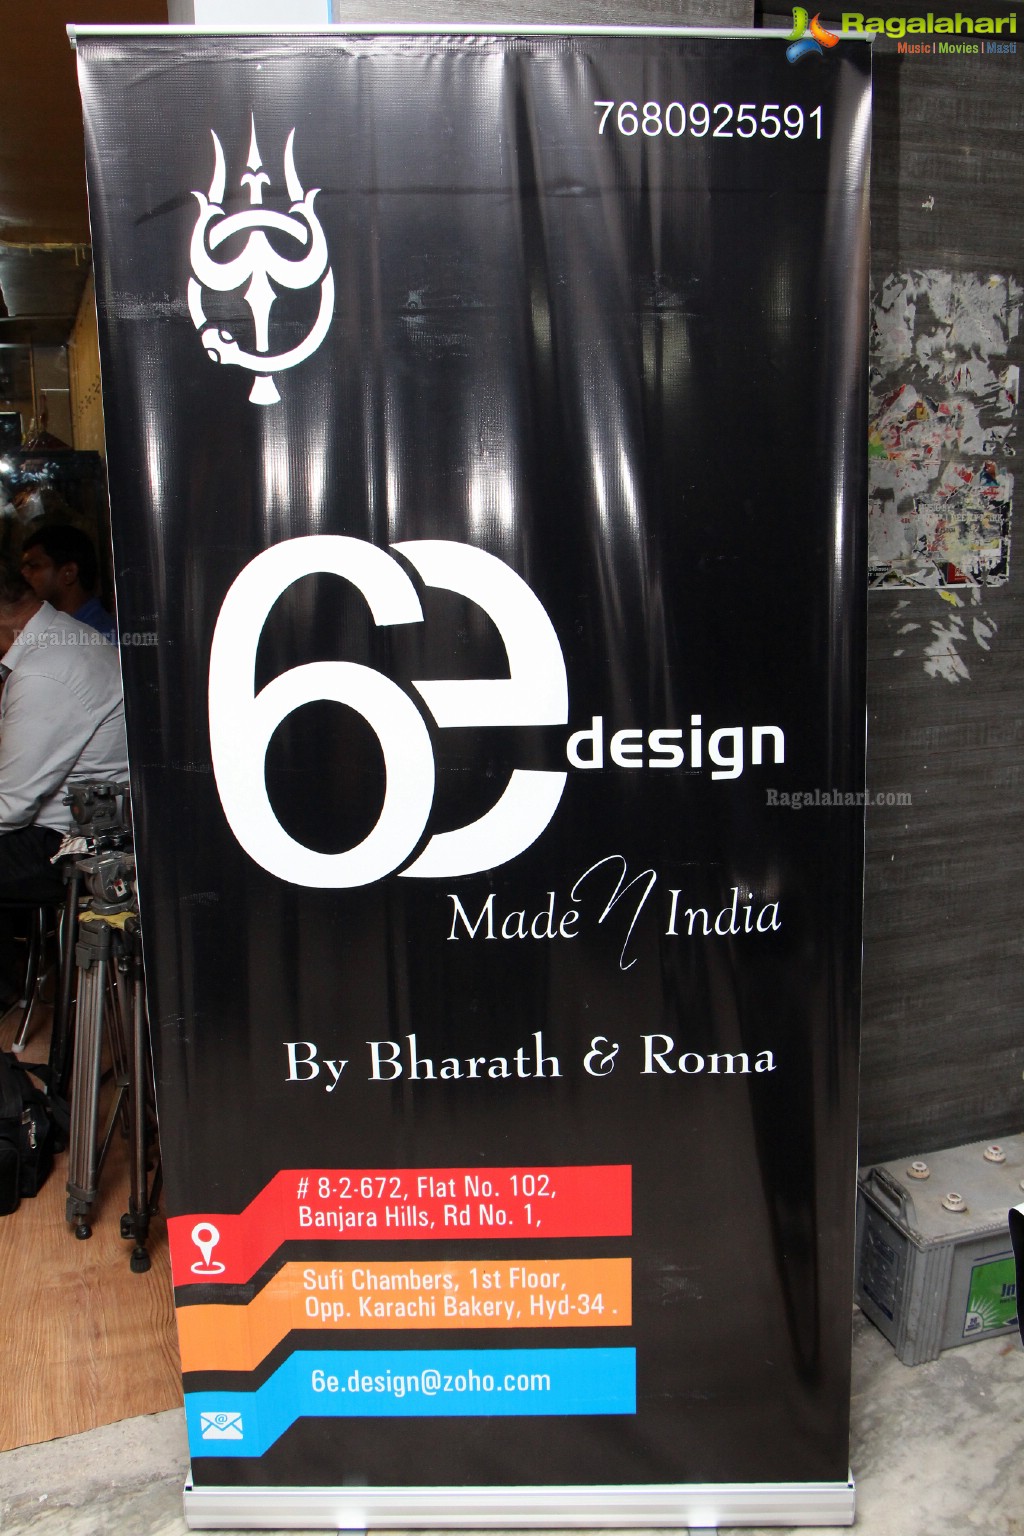 Grand Launch of 6E Design